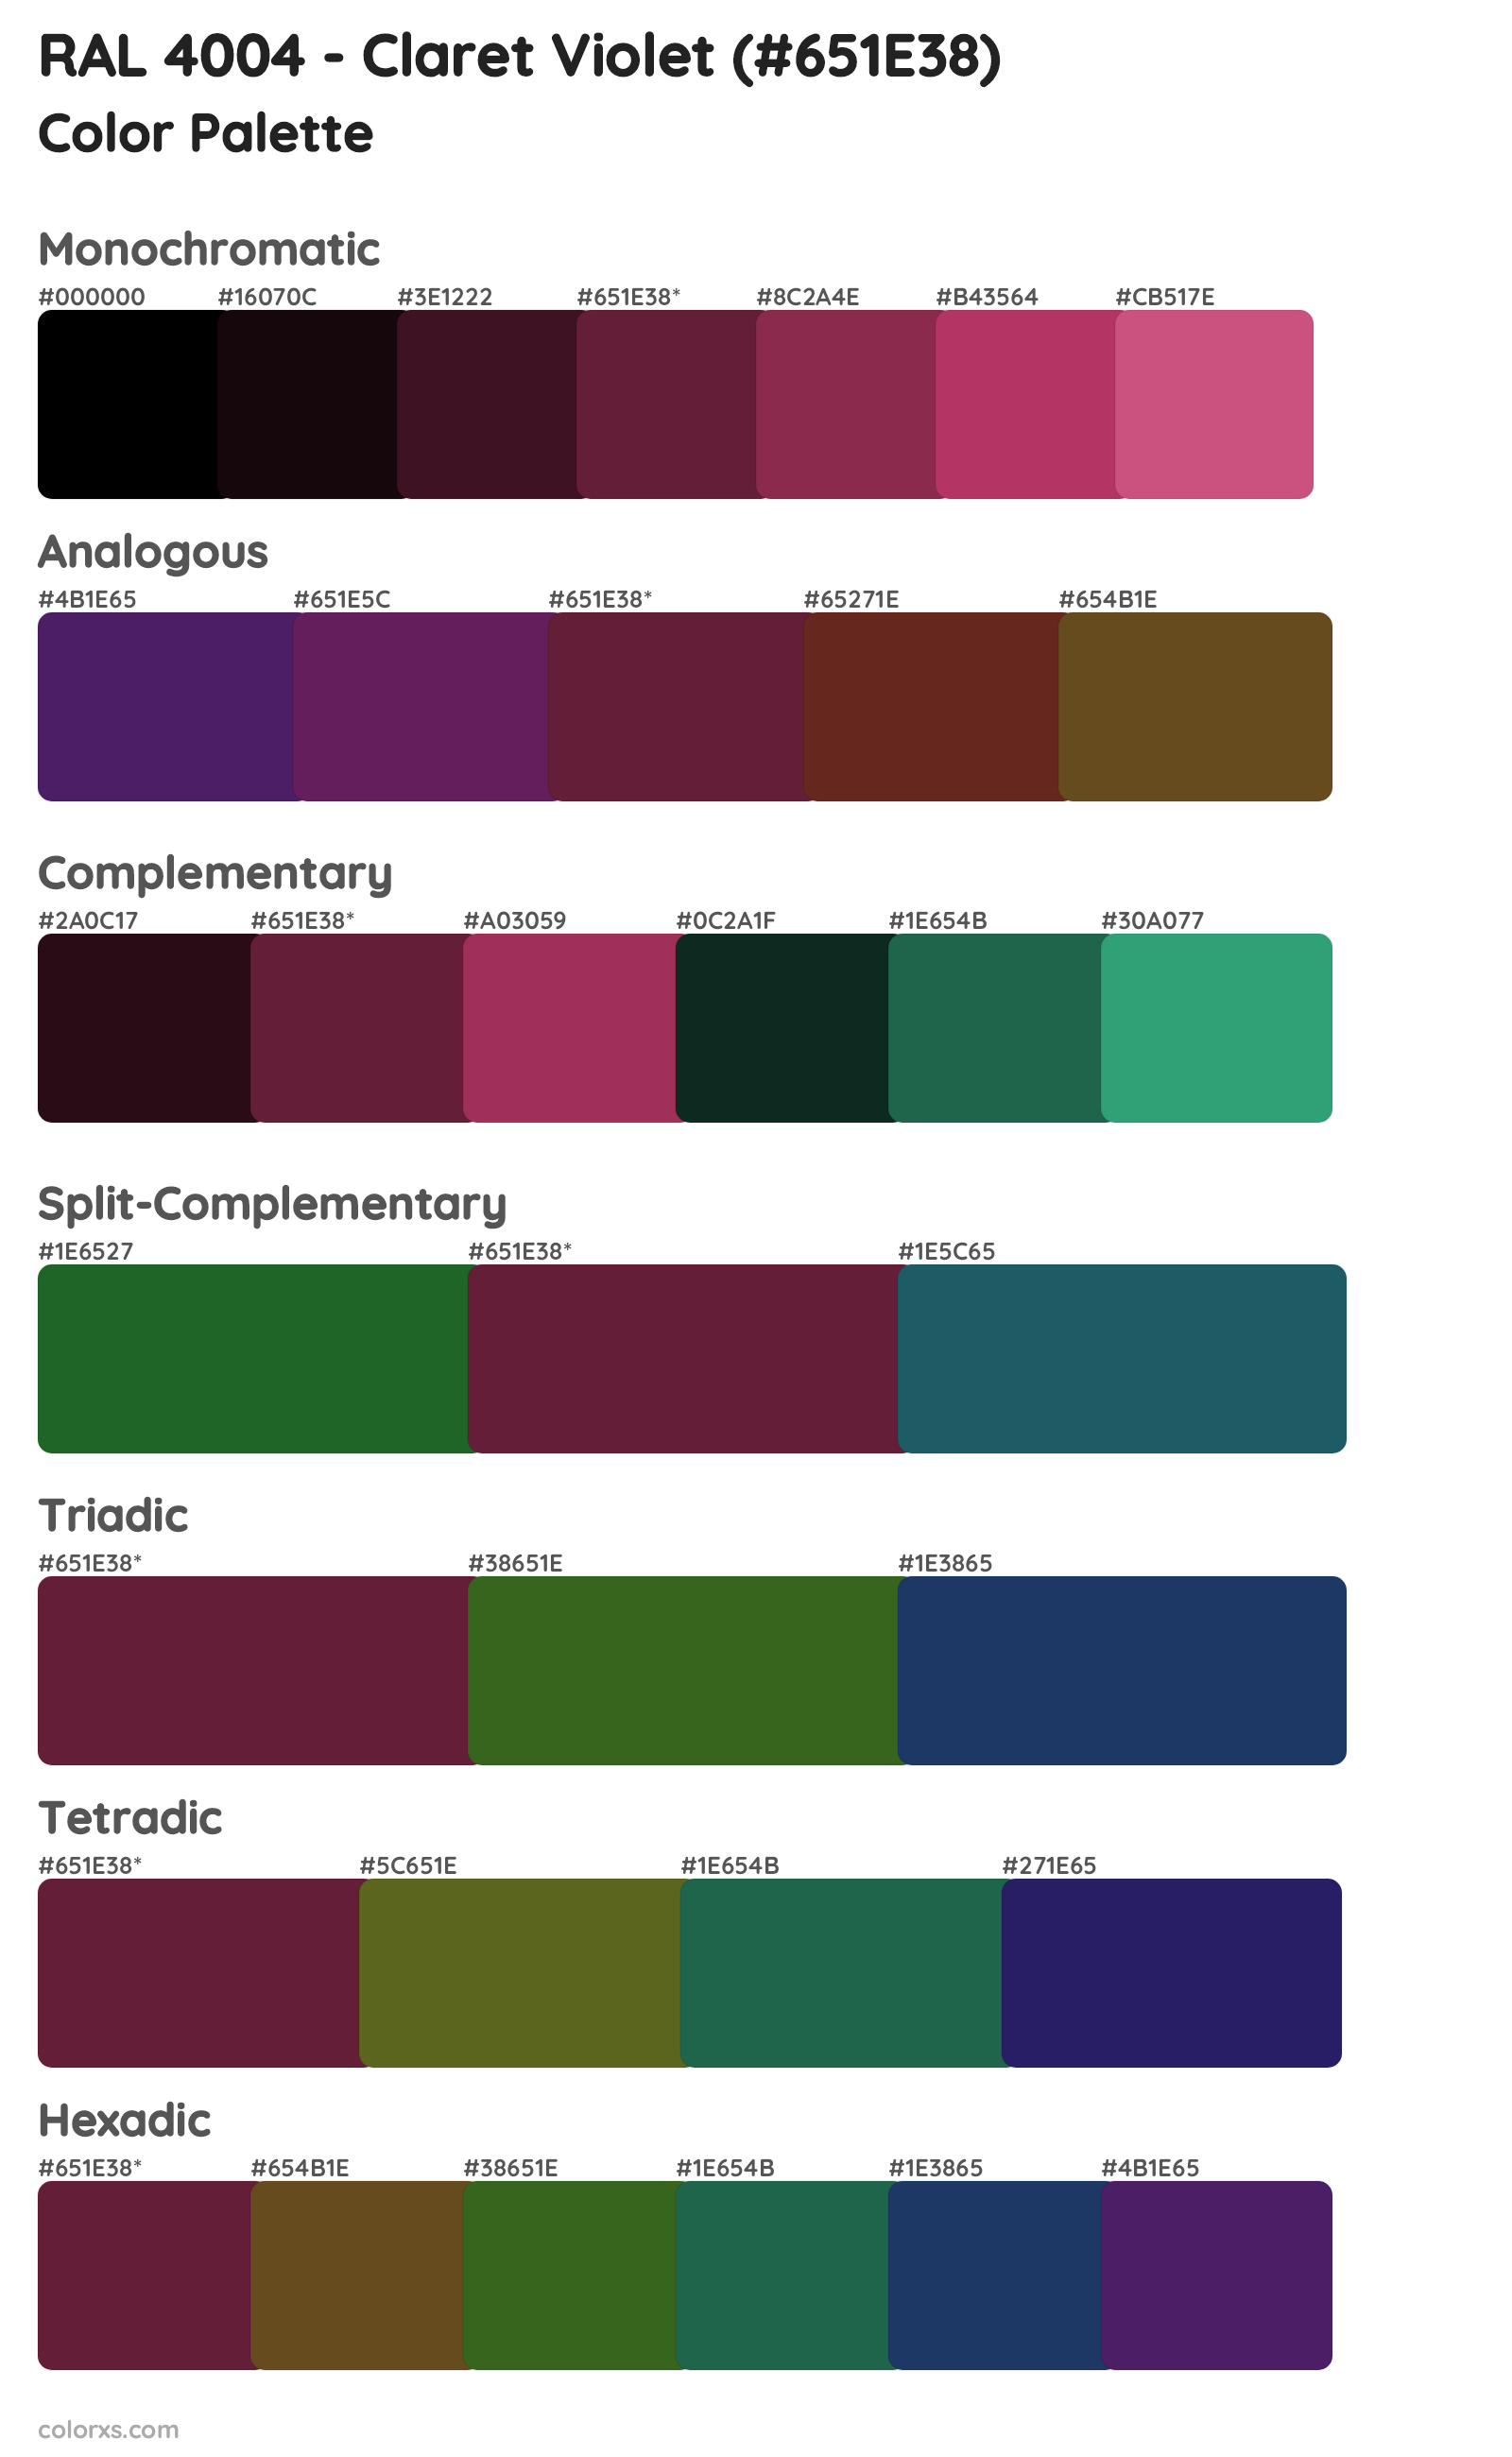 RAL 4004 - Claret Violet Color Scheme Palettes